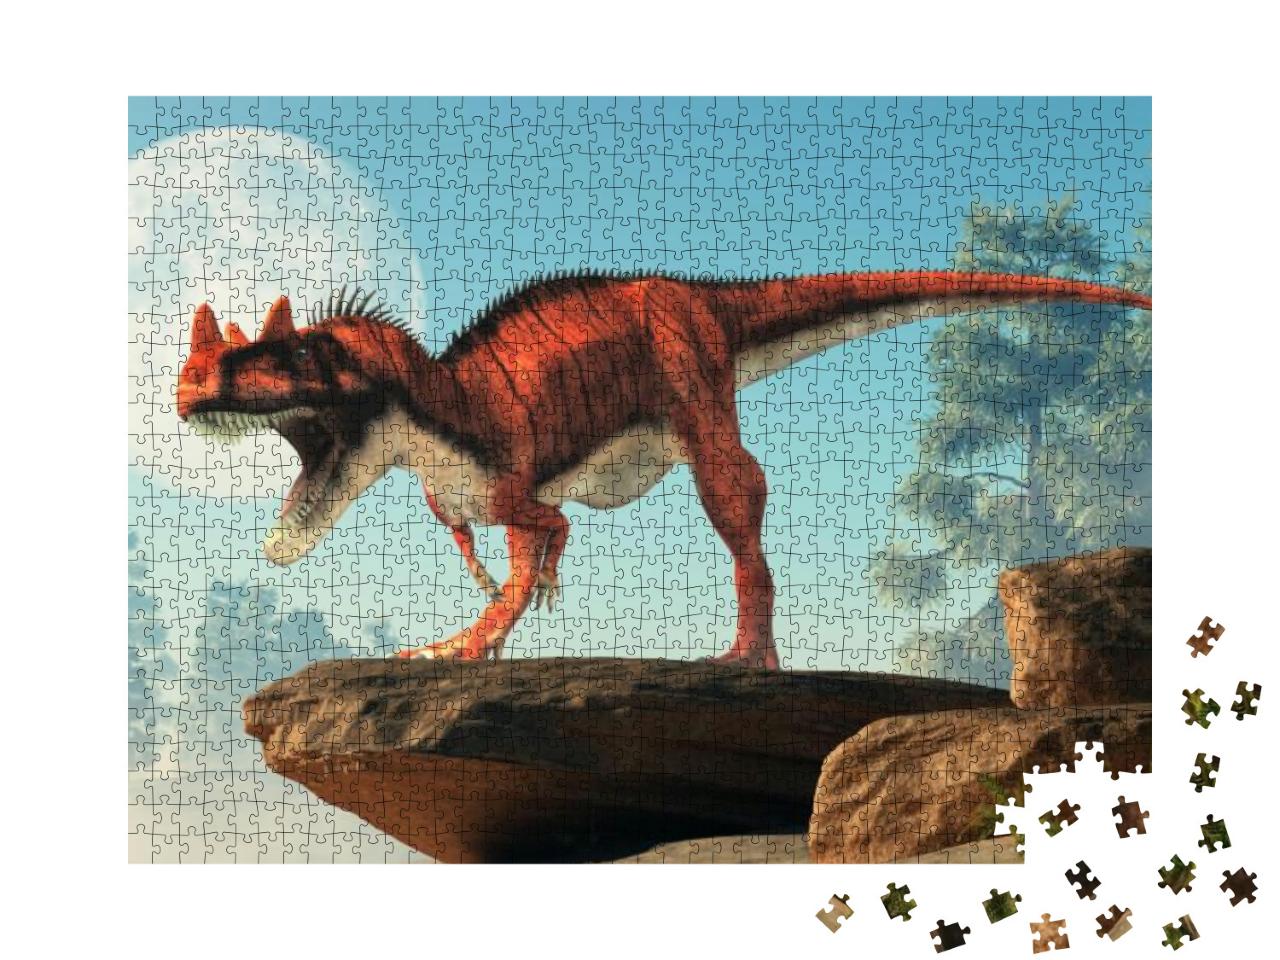 Puzzle 1000 Teile „Ceratosaurus, ein Dinosaurier aus der Jurazeit mit großen Hörnern“